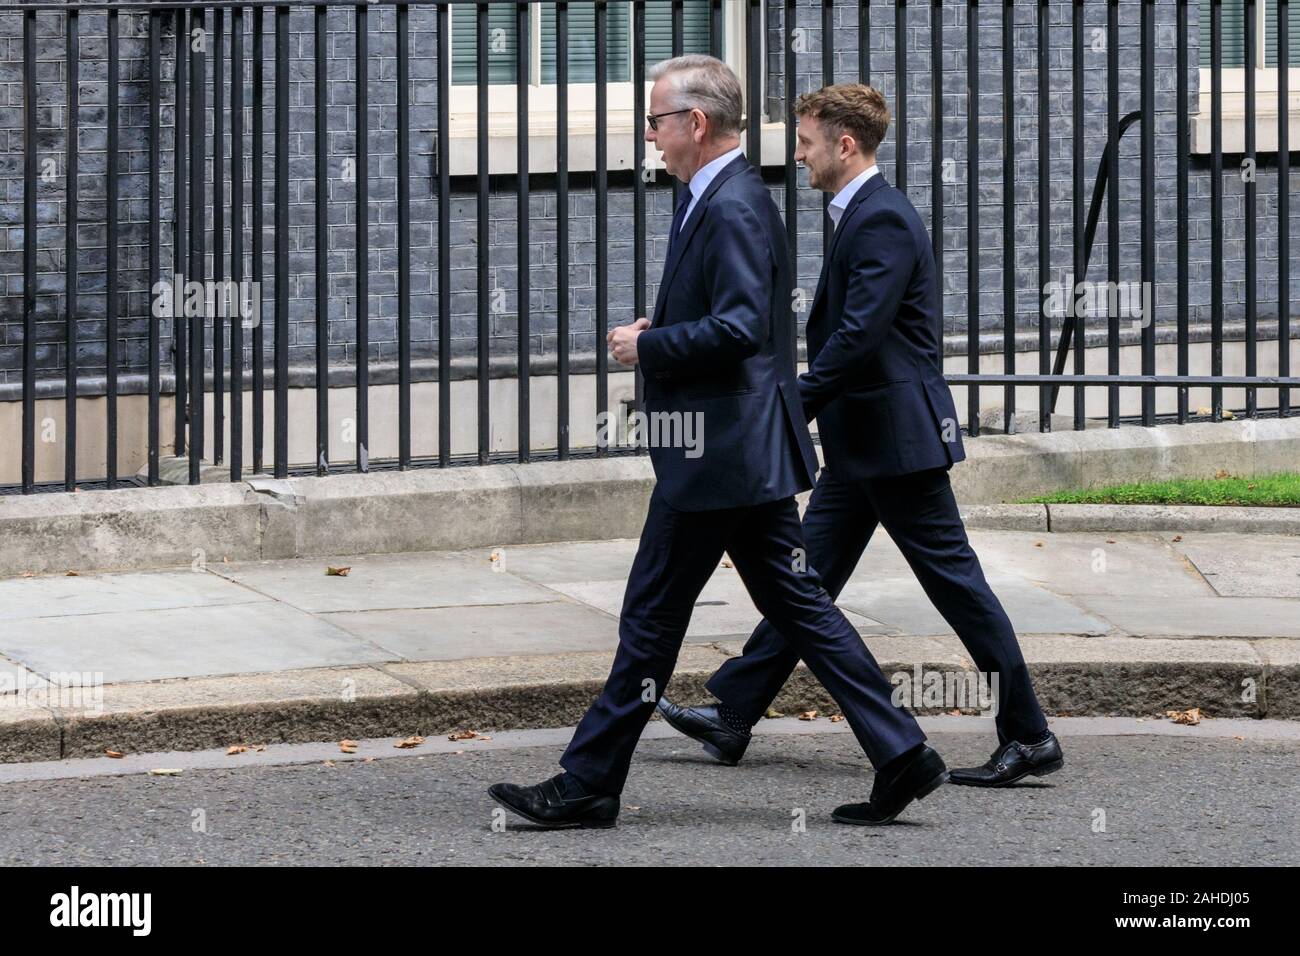 Michael Gove, ministro conservatore, con il collega, passeggiate lungo Downing Street al n. 10, Westminster, London, Regno Unito Foto Stock